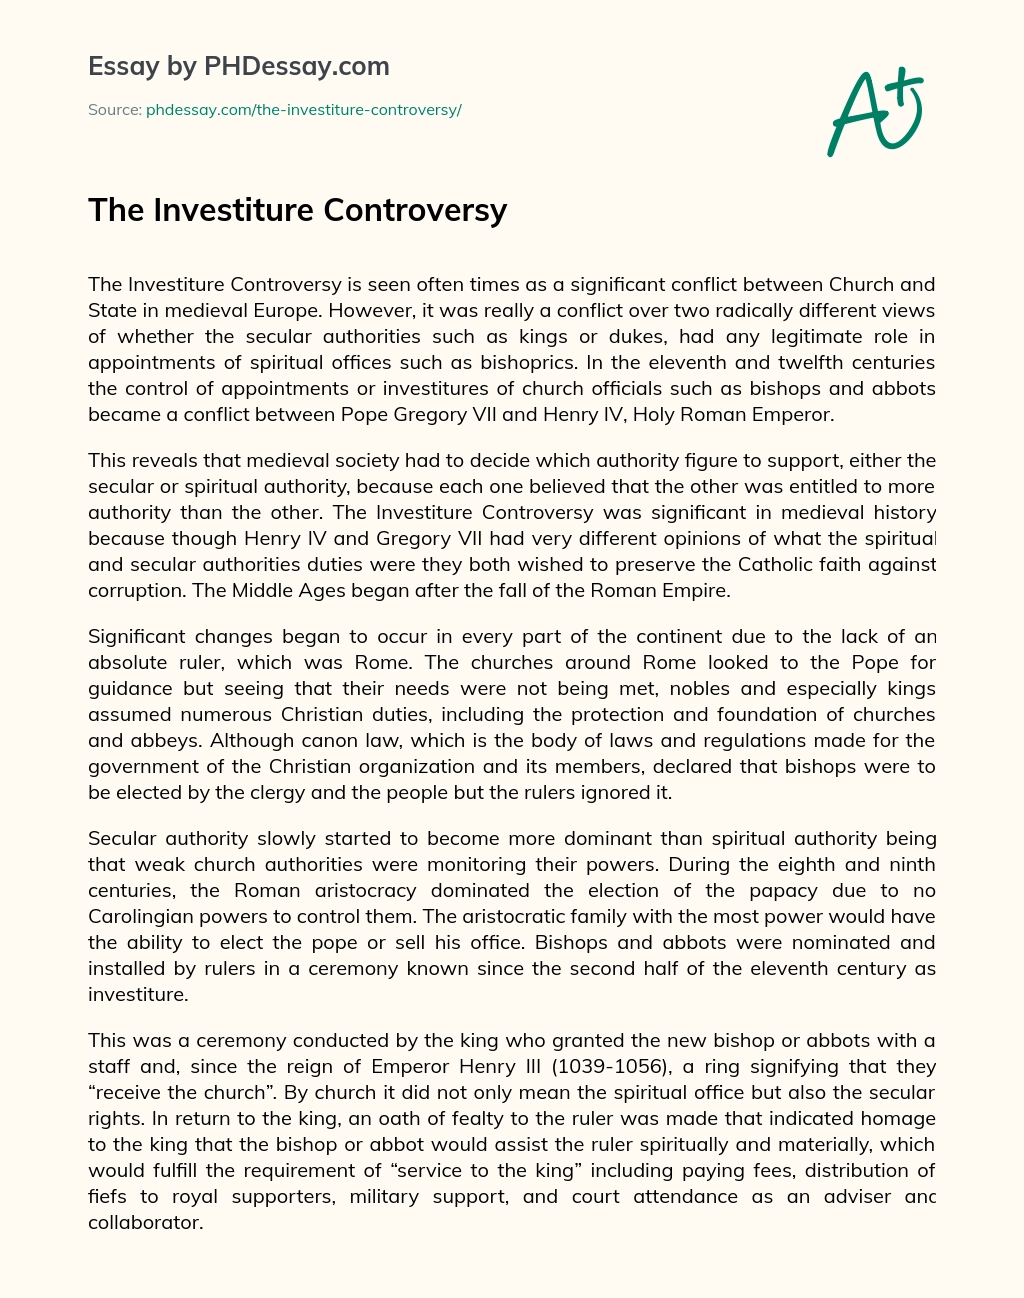 The Investiture Controversy essay